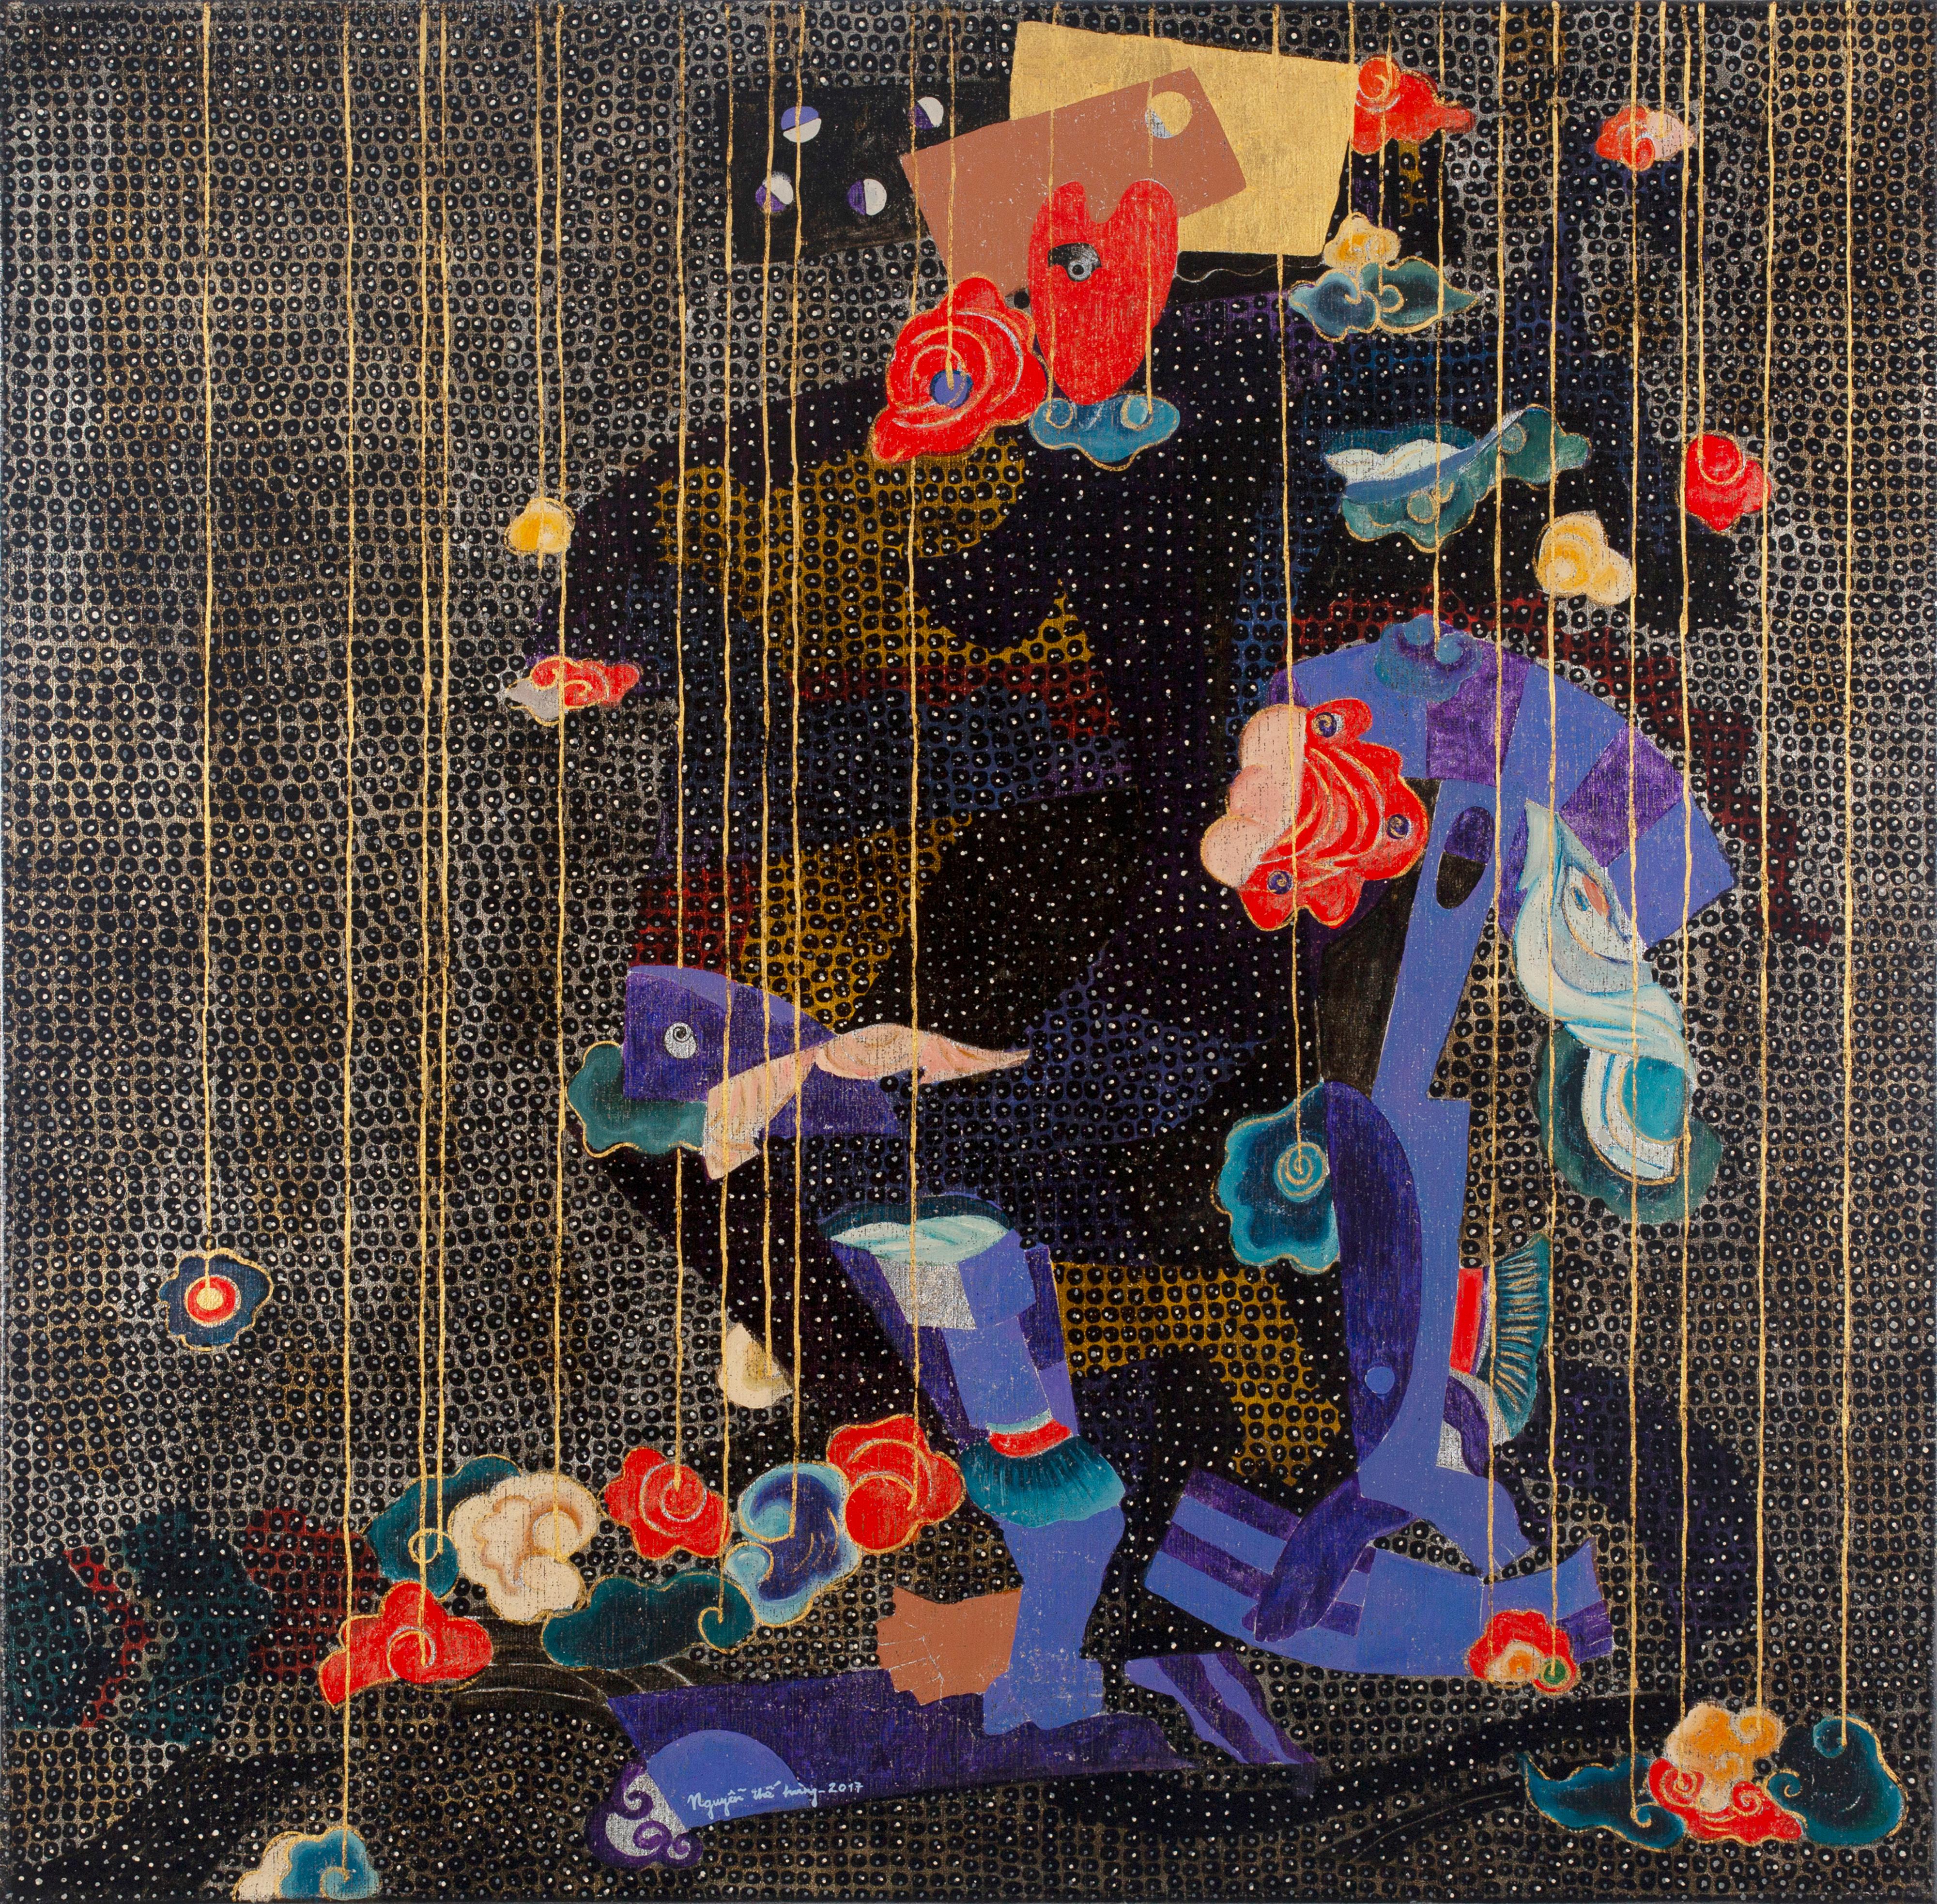 Figurative Painting Nguyen The Hung - Nuages et ombres I", peinture d'expressionnisme abstrait, or noir 